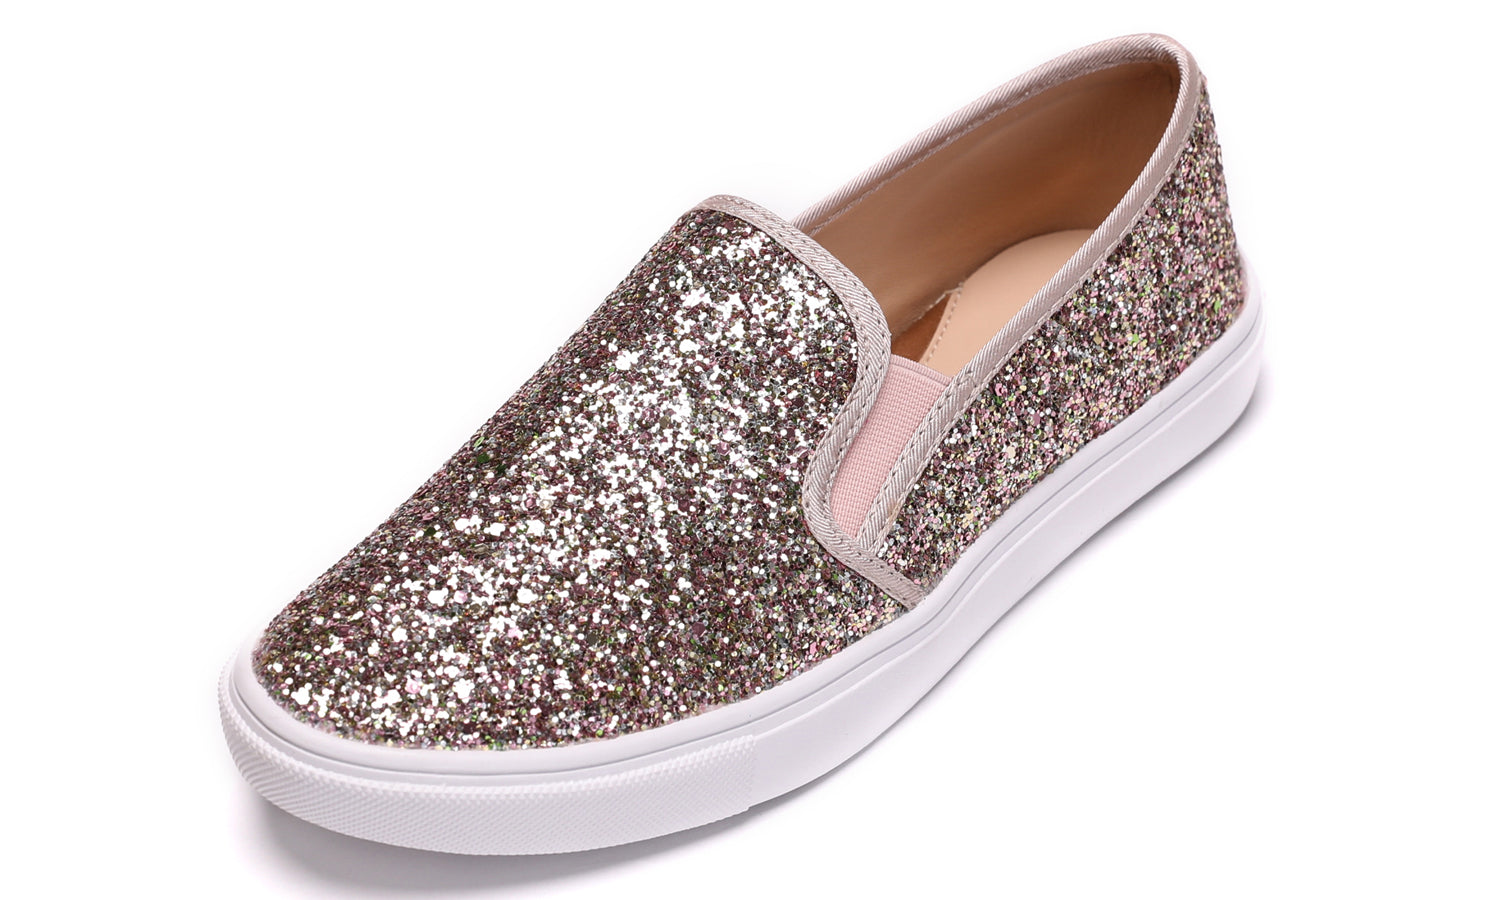 Feversole Women's Glitter Pink Gold Slip On Sneaker Casual Flat Loafers